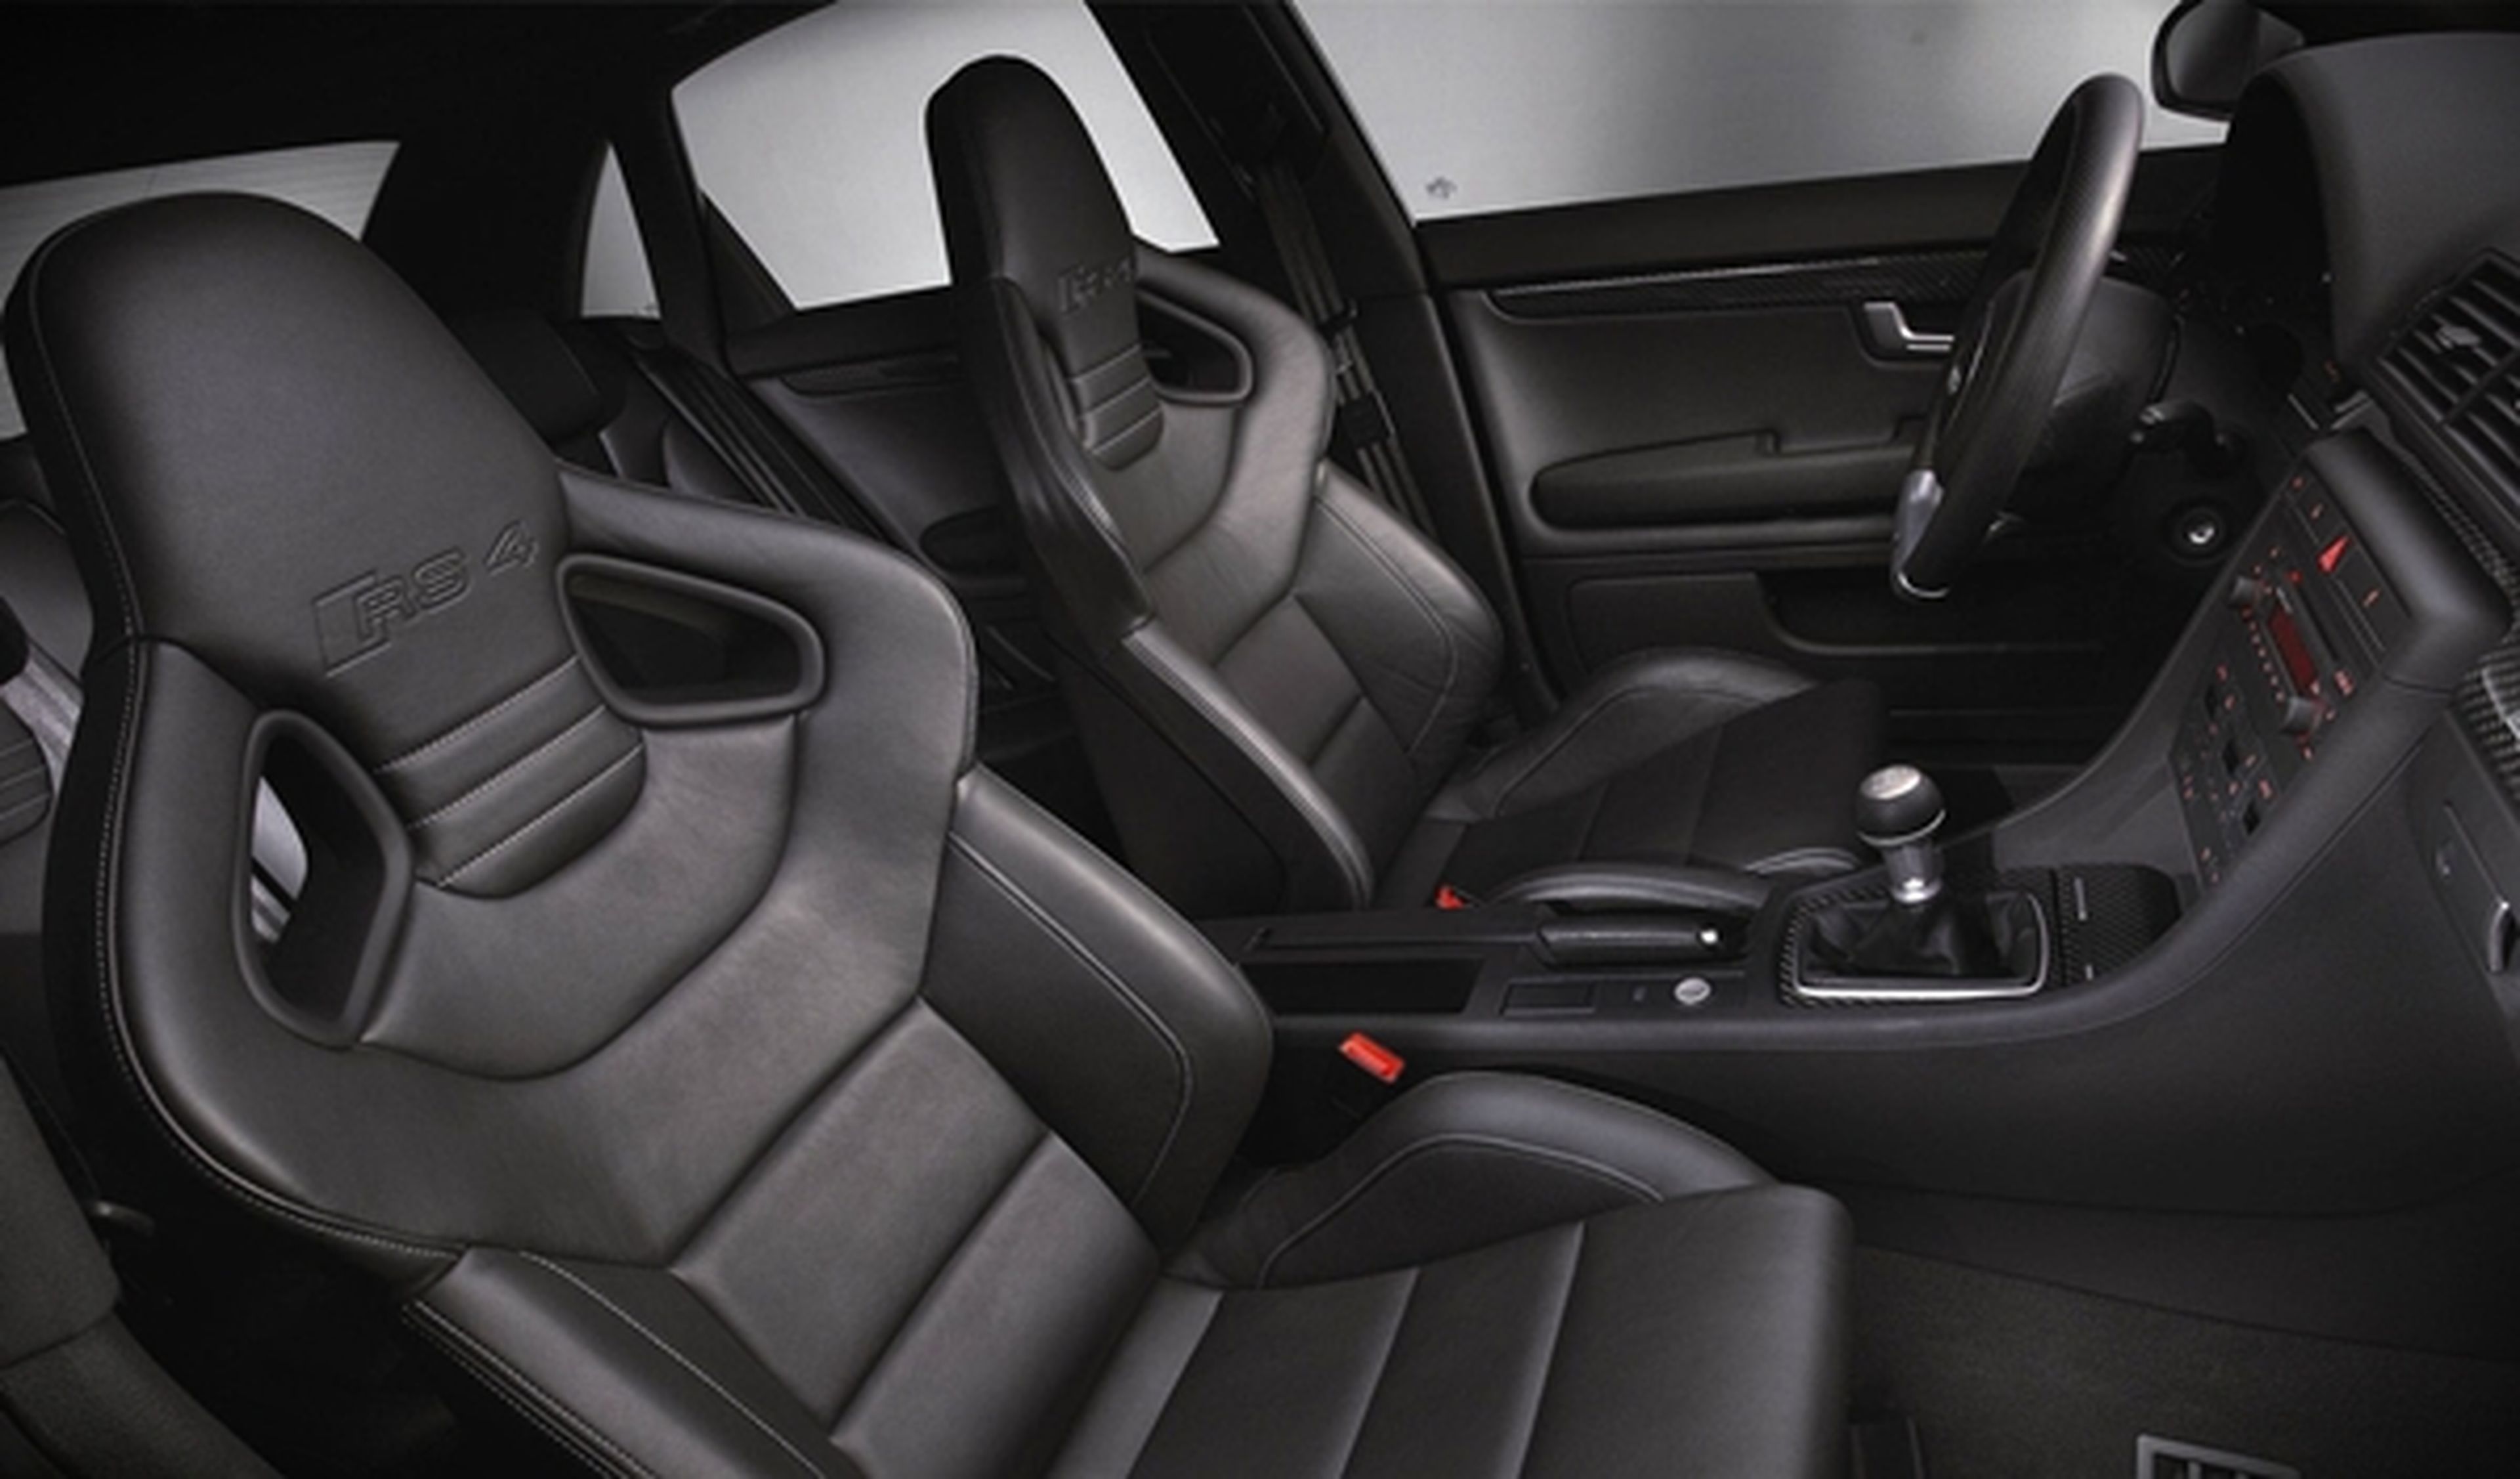 Oleada de robos de asientos del Audi RS 4 en Reino Unido